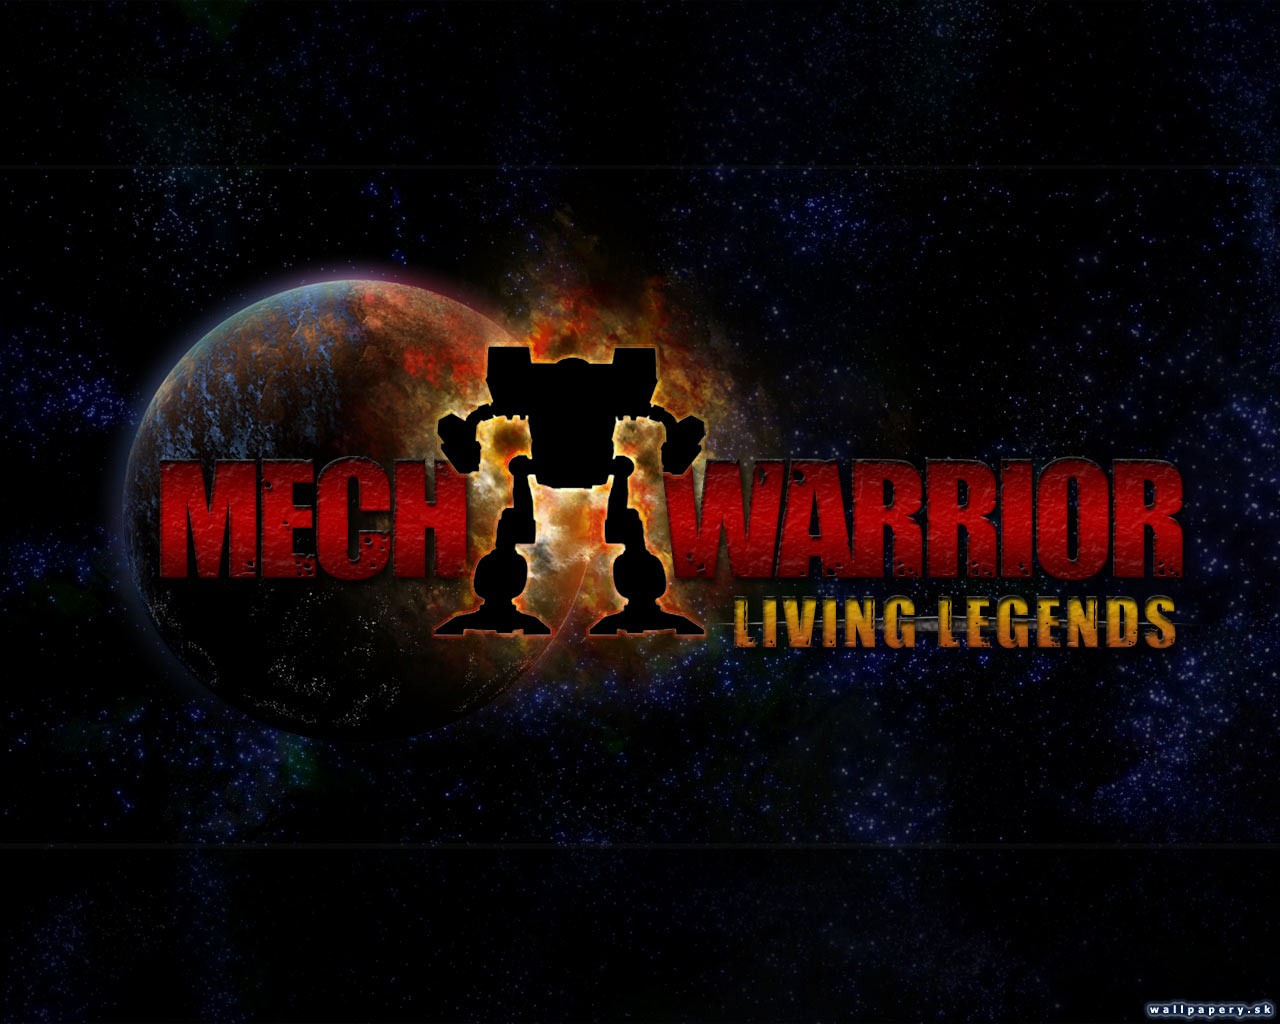 MechWarrior: Living Legends - wallpaper 1